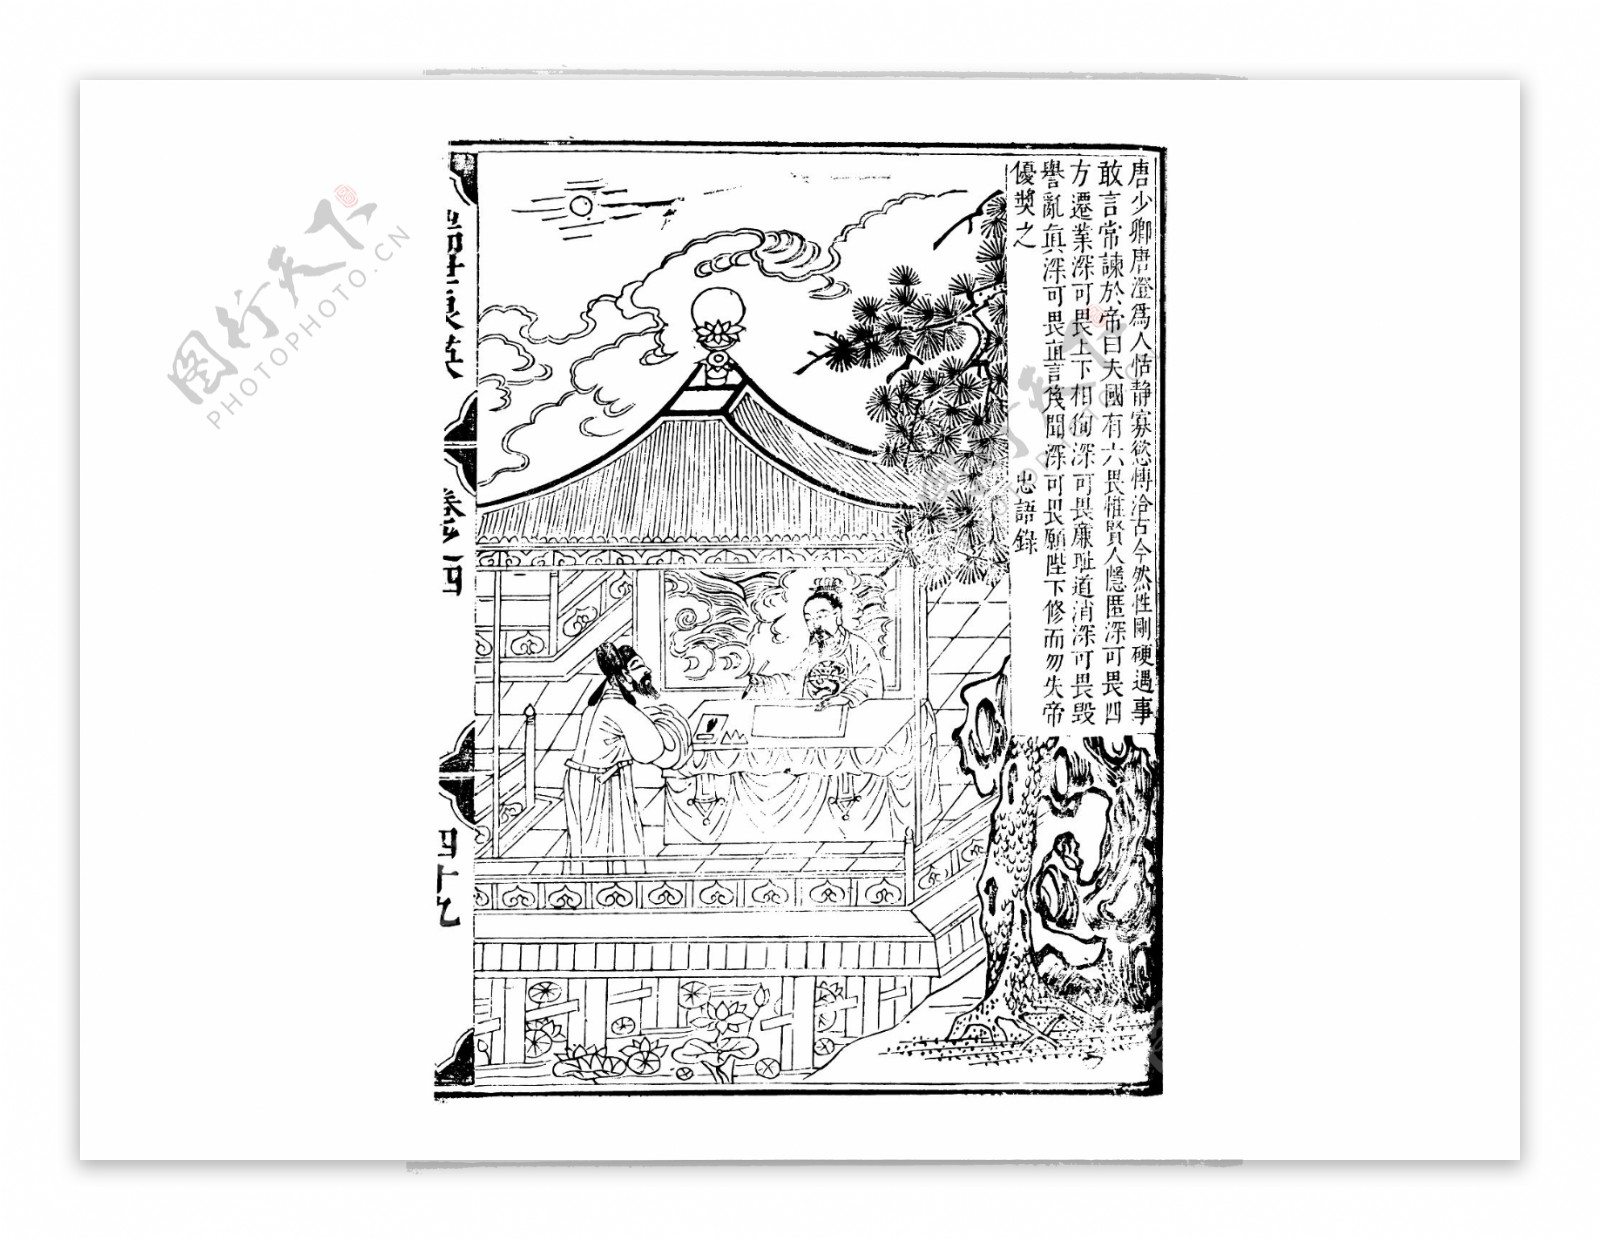 古风中国人物生活线稿素材141